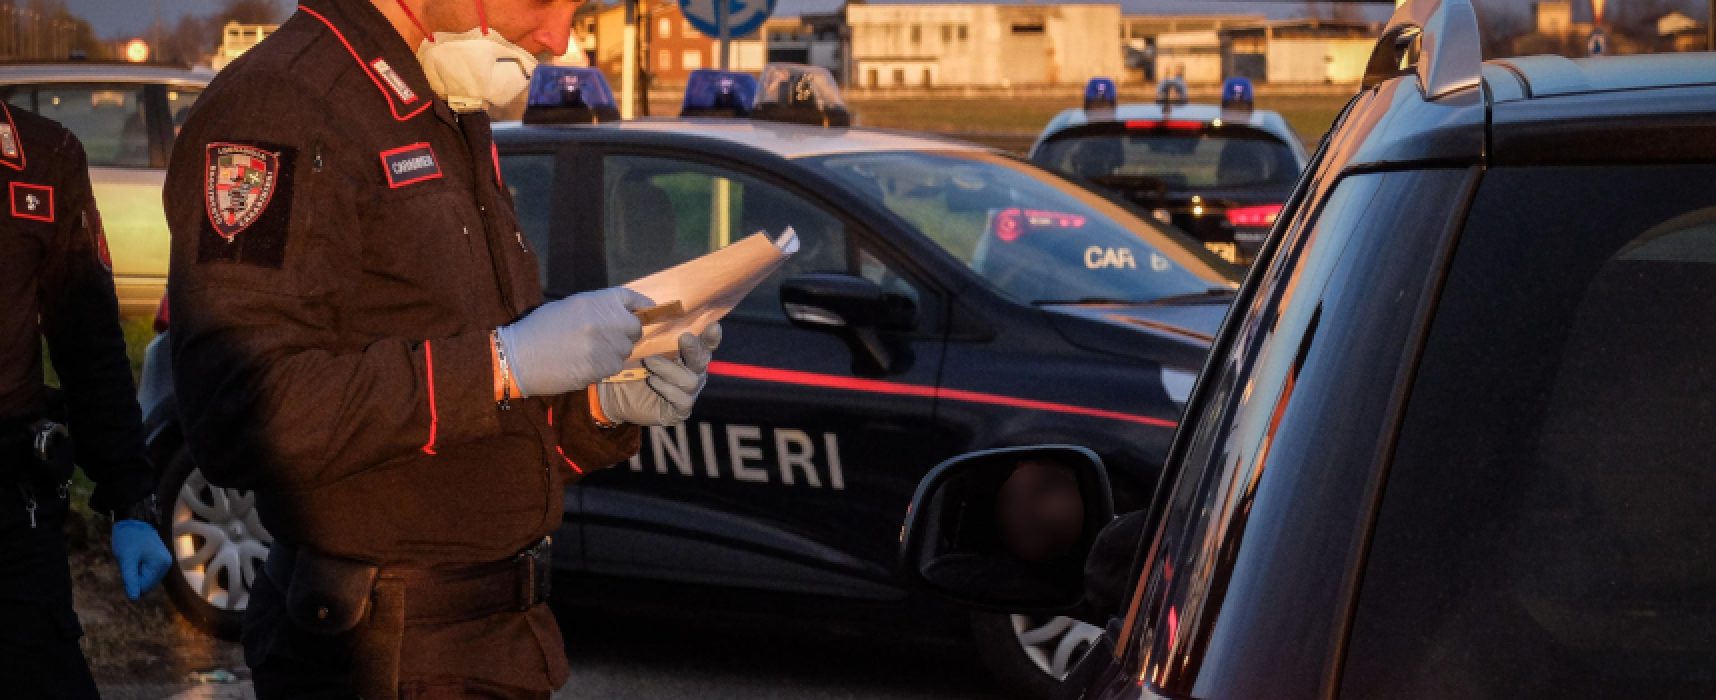 Carabinieri Bat impegnati in attività di controllo per rispetto disposizioni anti-covid